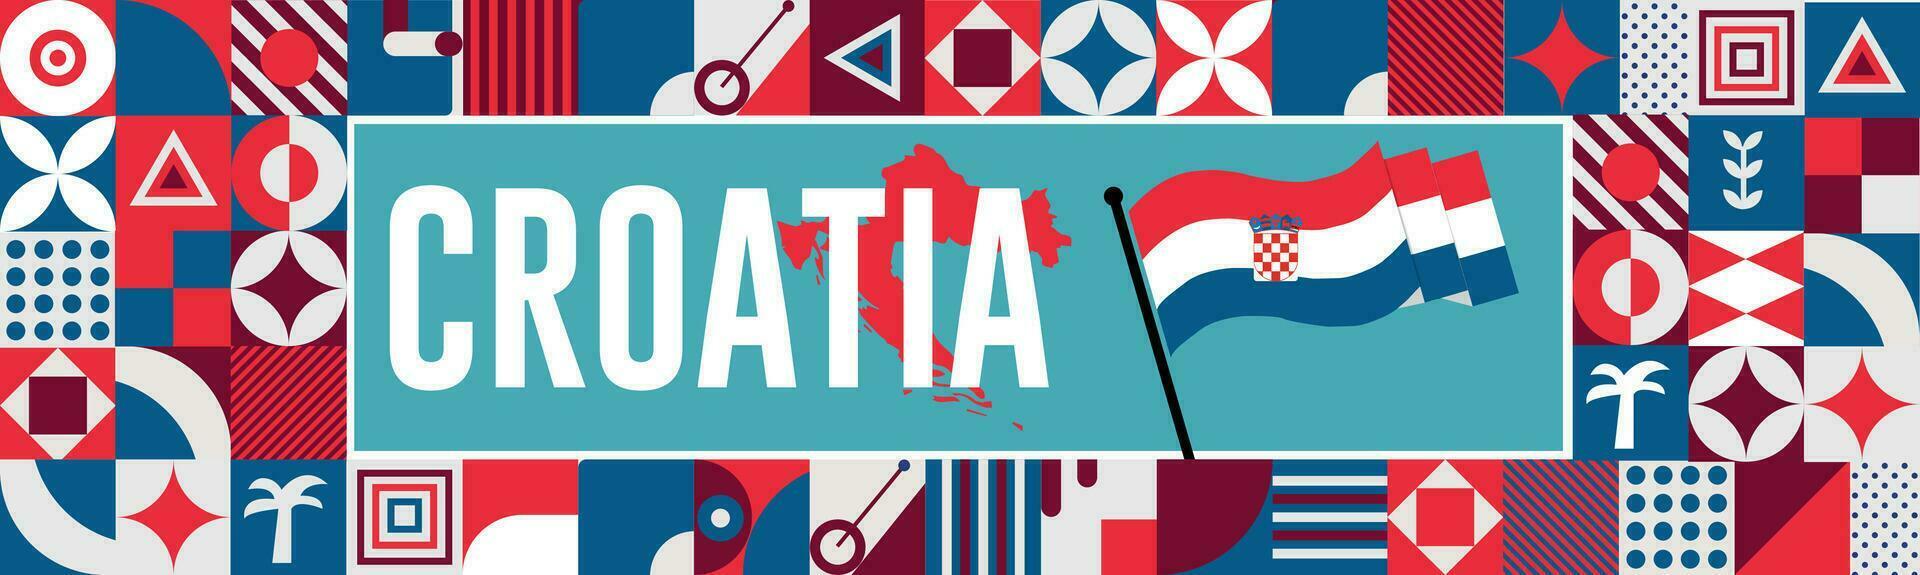 Kroatië kaart en verheven vuisten. nationaal dag of onafhankelijkheid dag ontwerp voor Kroatië viering. modern retro ontwerp met abstract pictogrammen. vector illustratie.